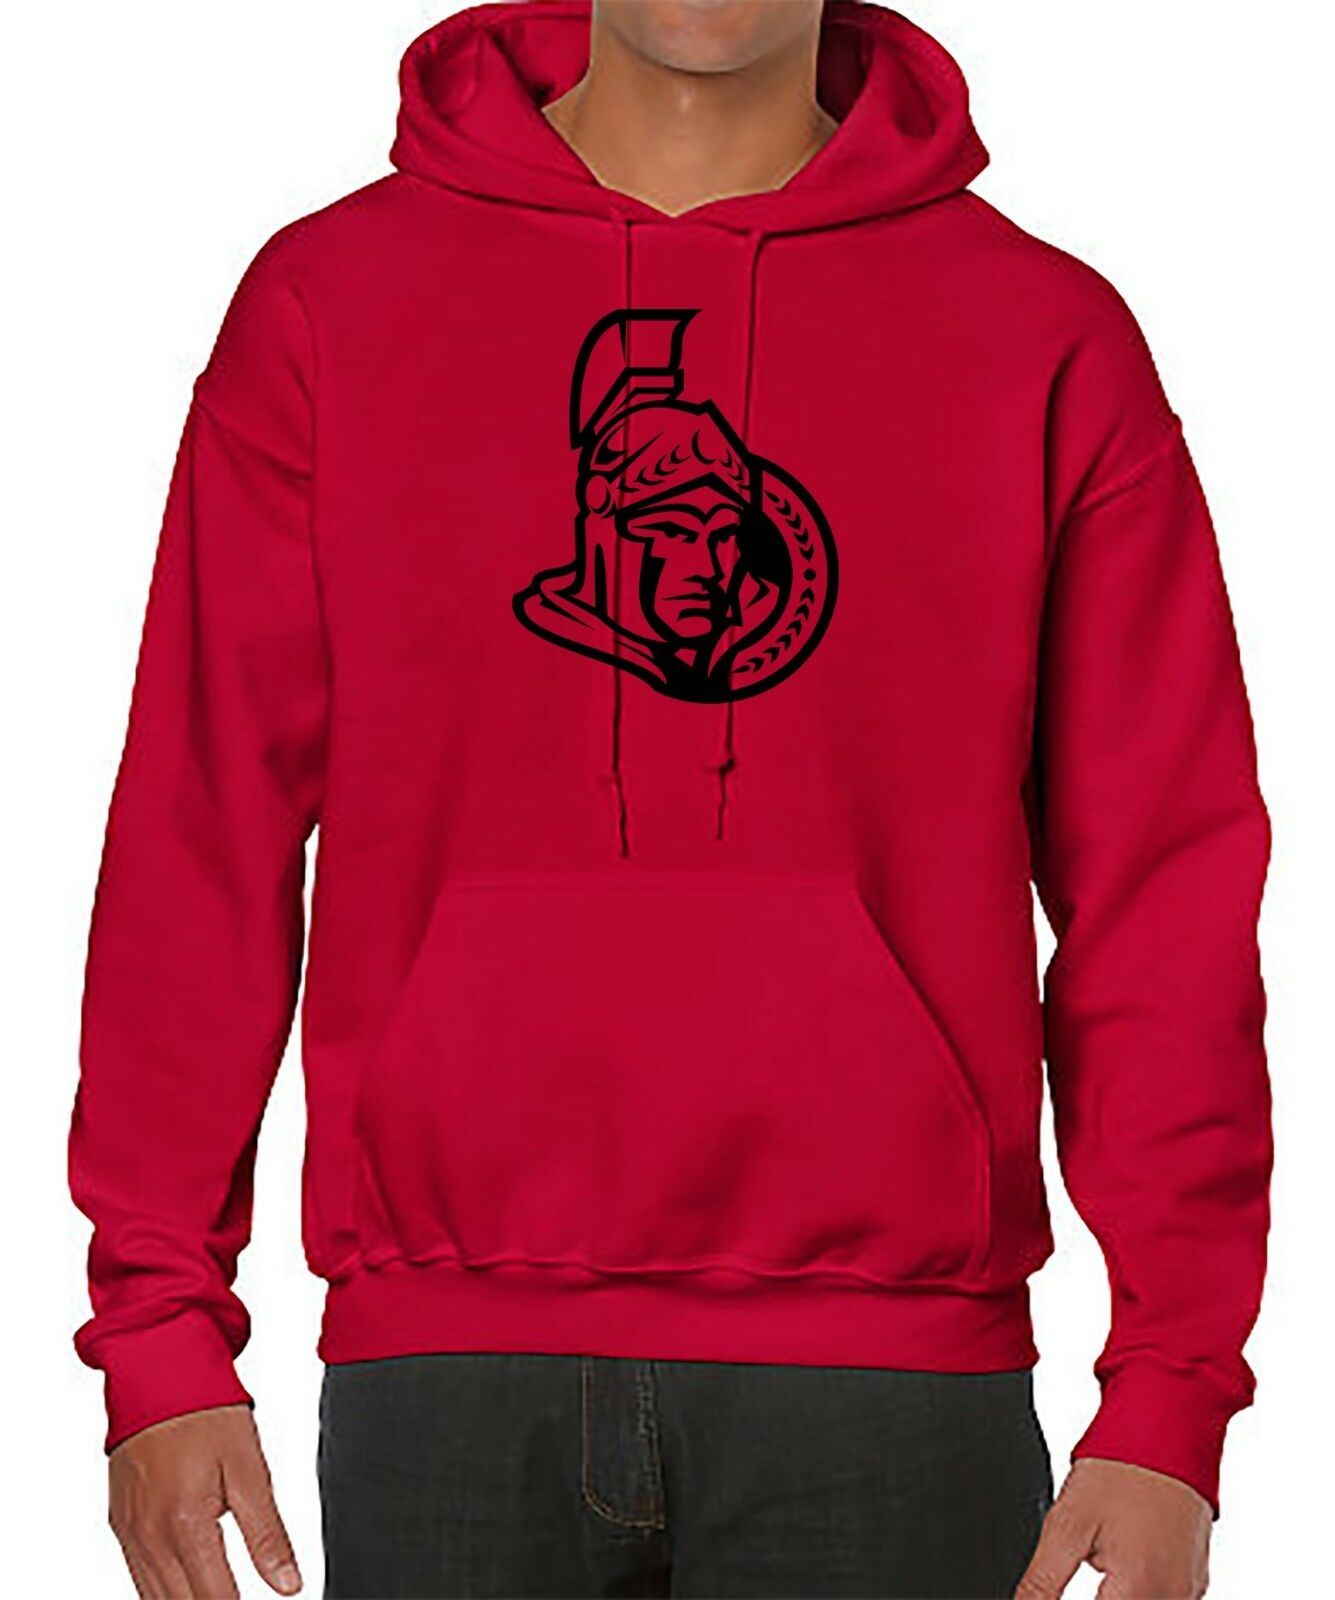 Hockey team hoodie - sweater with Ottawa Senators logo - comfort hoodie ...